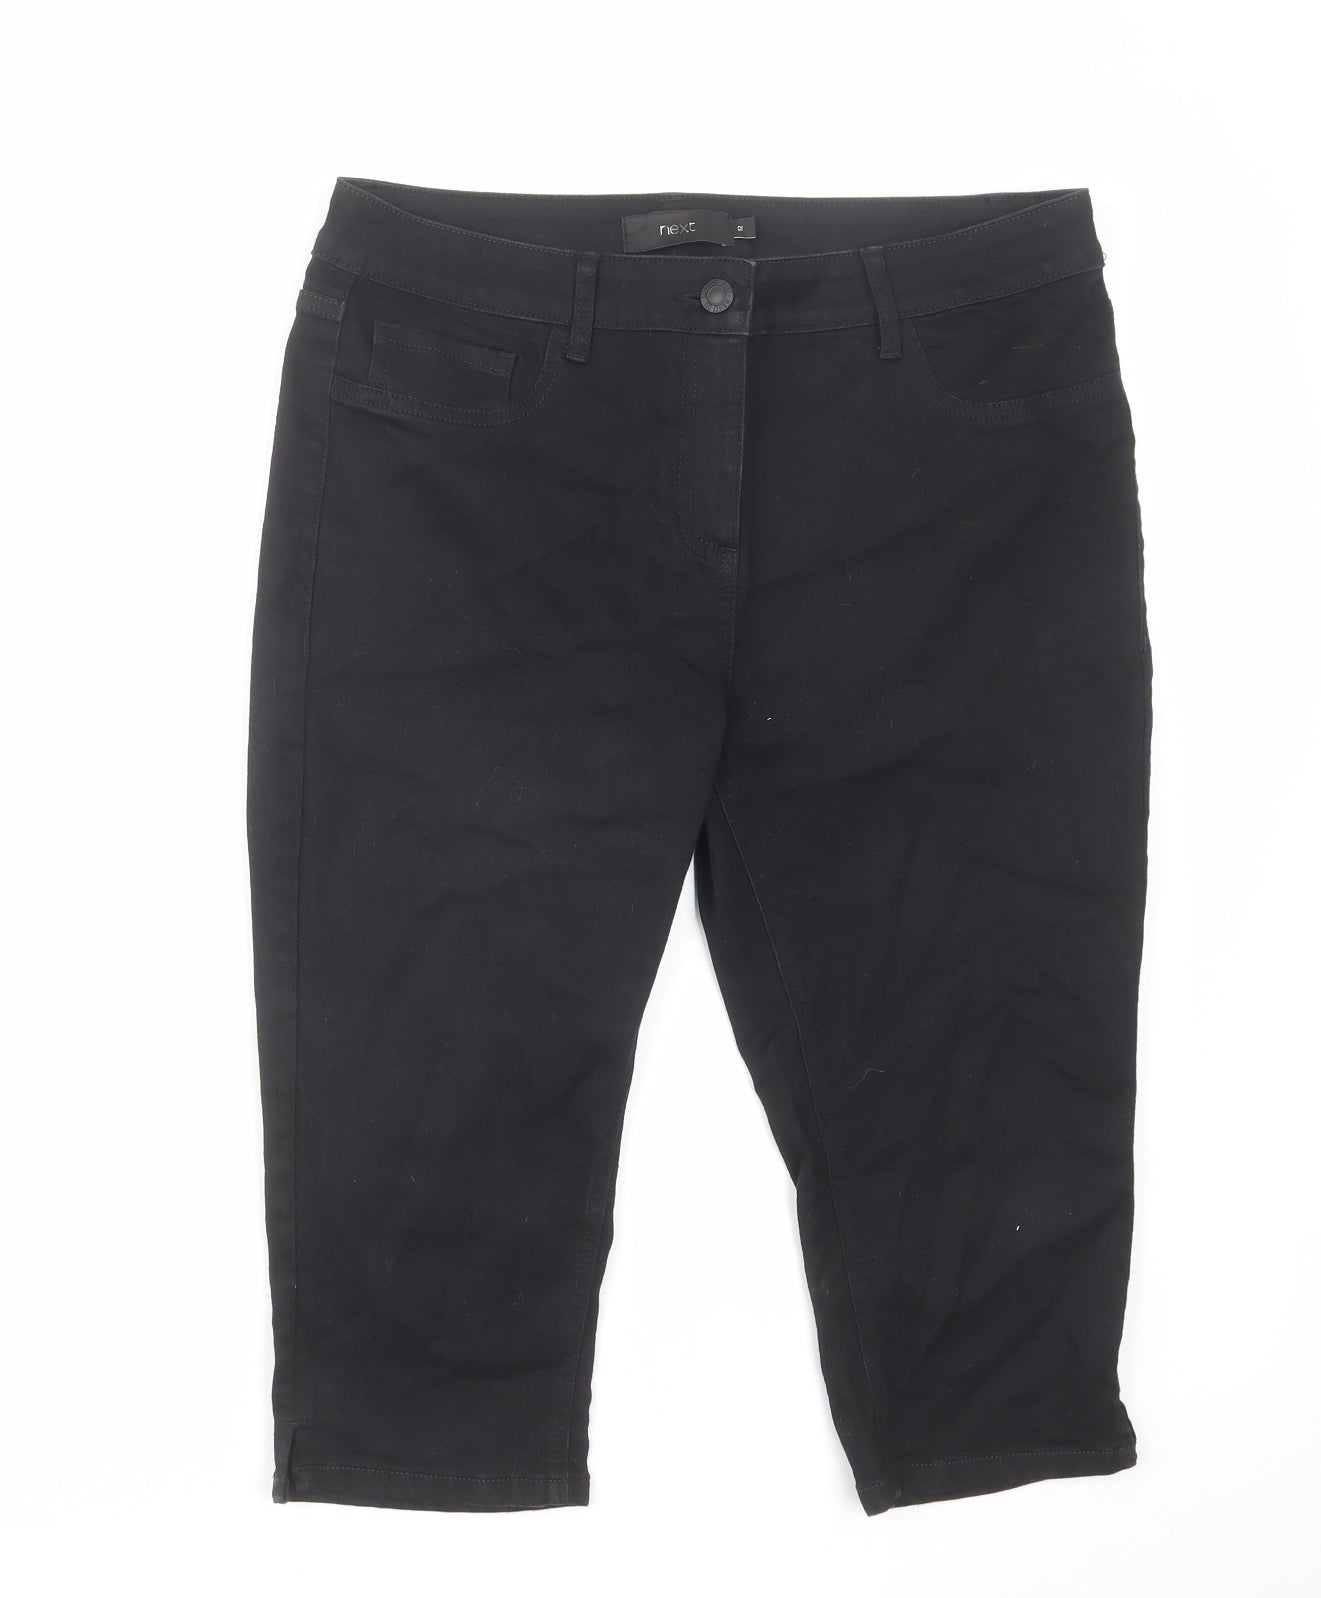 NEXT Womens Black Cotton Skimmer Shorts Size 12 L17 in Regular Zip